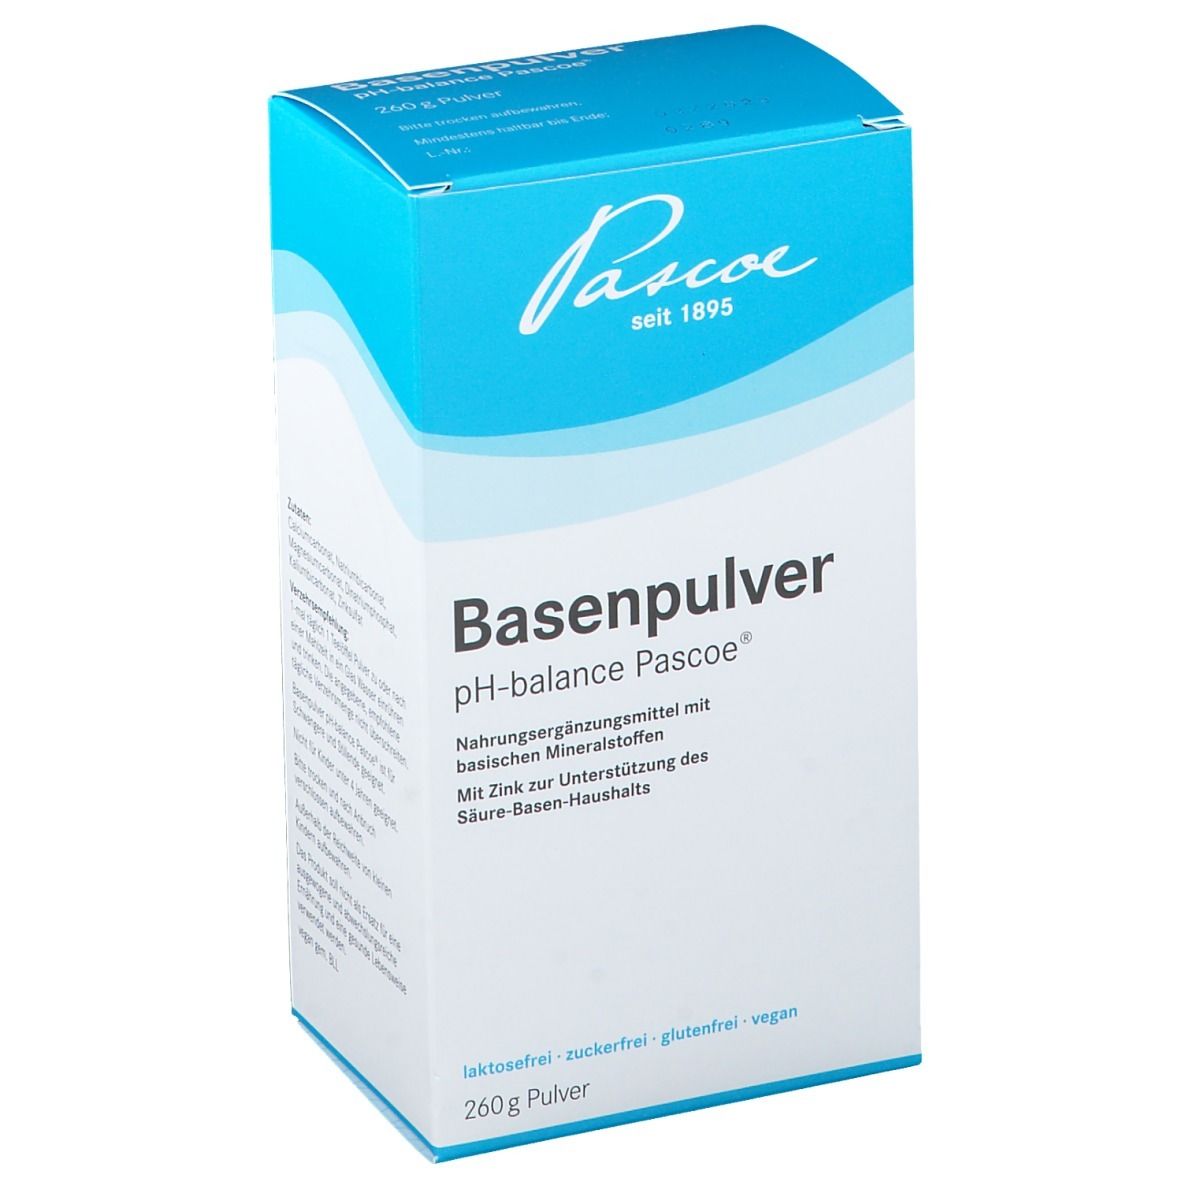 Basenpulver pH-balance Pascoe®